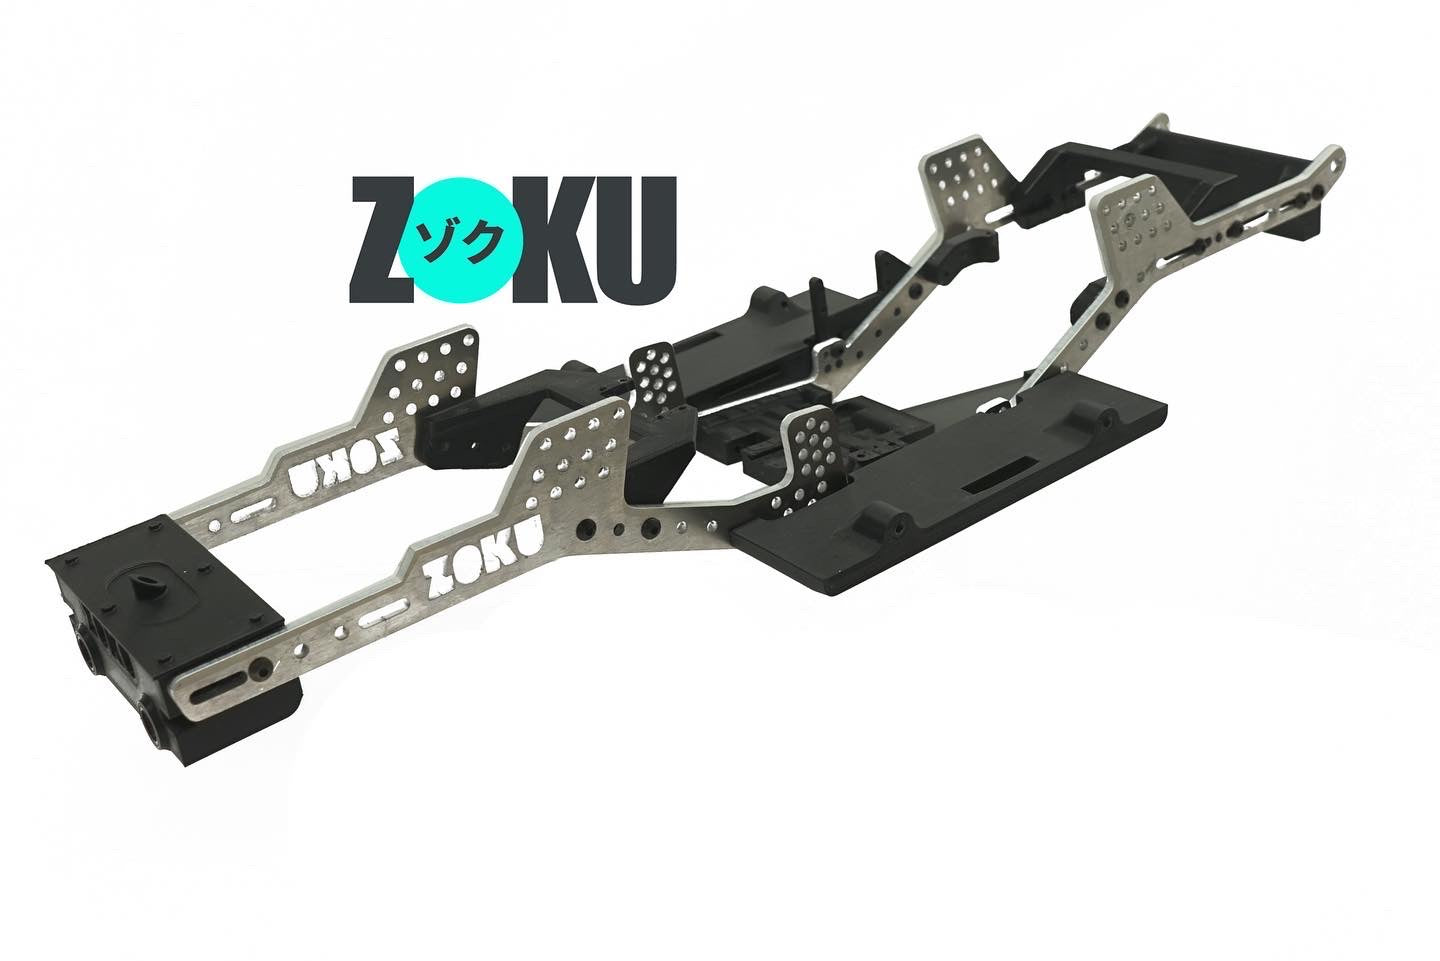 Zoku Chassis for VS-410